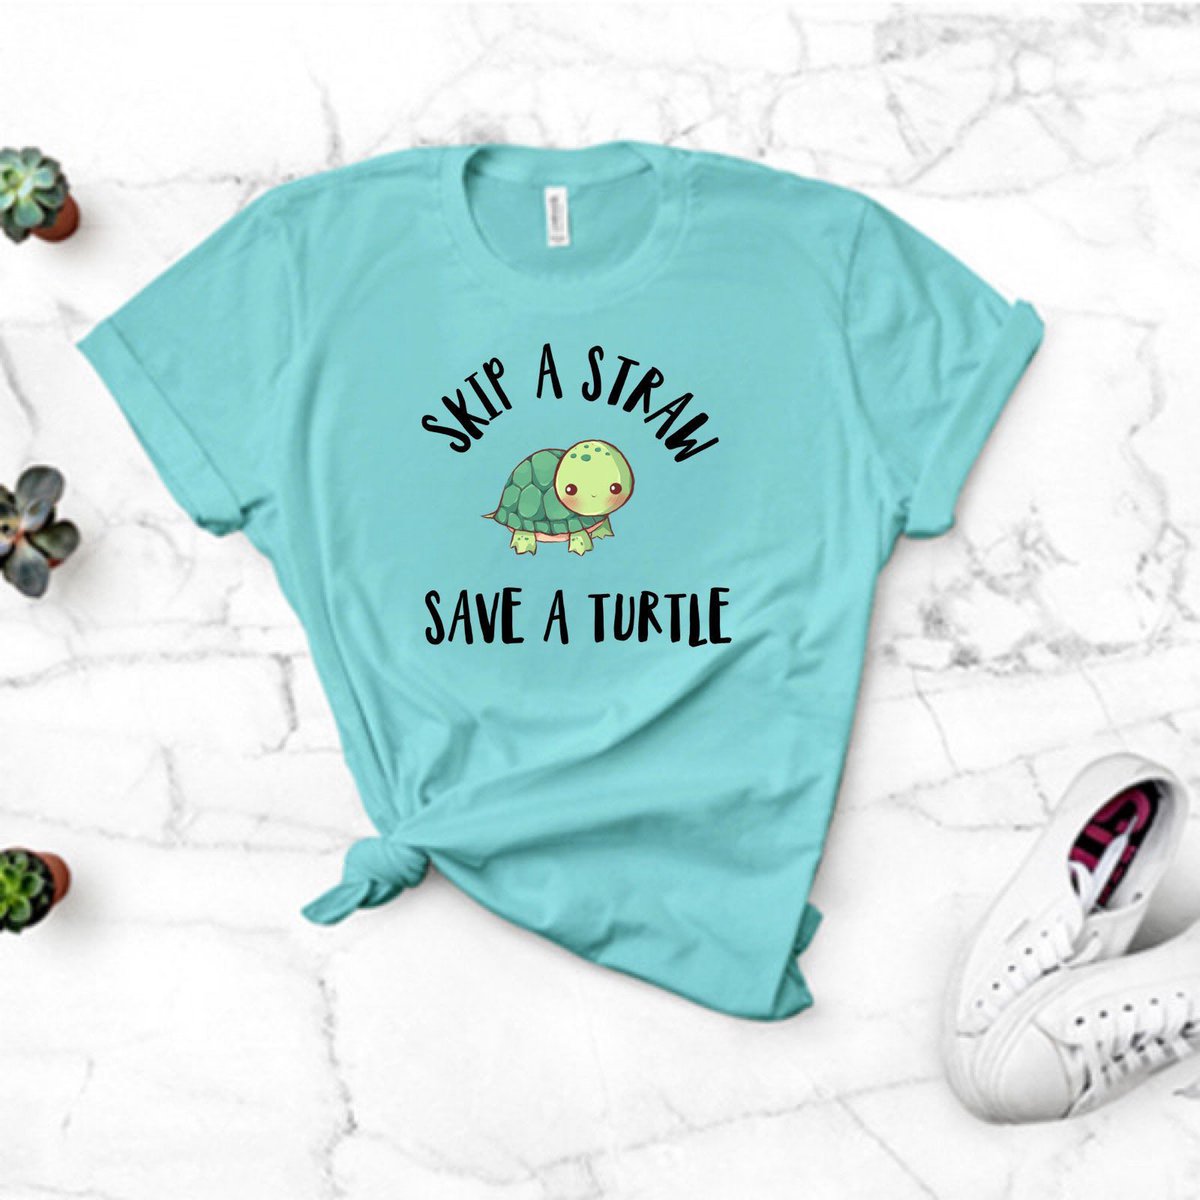 Skip A Straw Save A Turtle, shirt #etsy #skipsstraws #savetheturtles #antiplastic #antistraws #saveaturtleshirt #skipastraw #saveaturtle #turtlepower #iliketurtles #savethebay #environmentalist #savetheturtles #tshirt #turtle #seaturtle #turtlesofig etsy.me/308VxTD